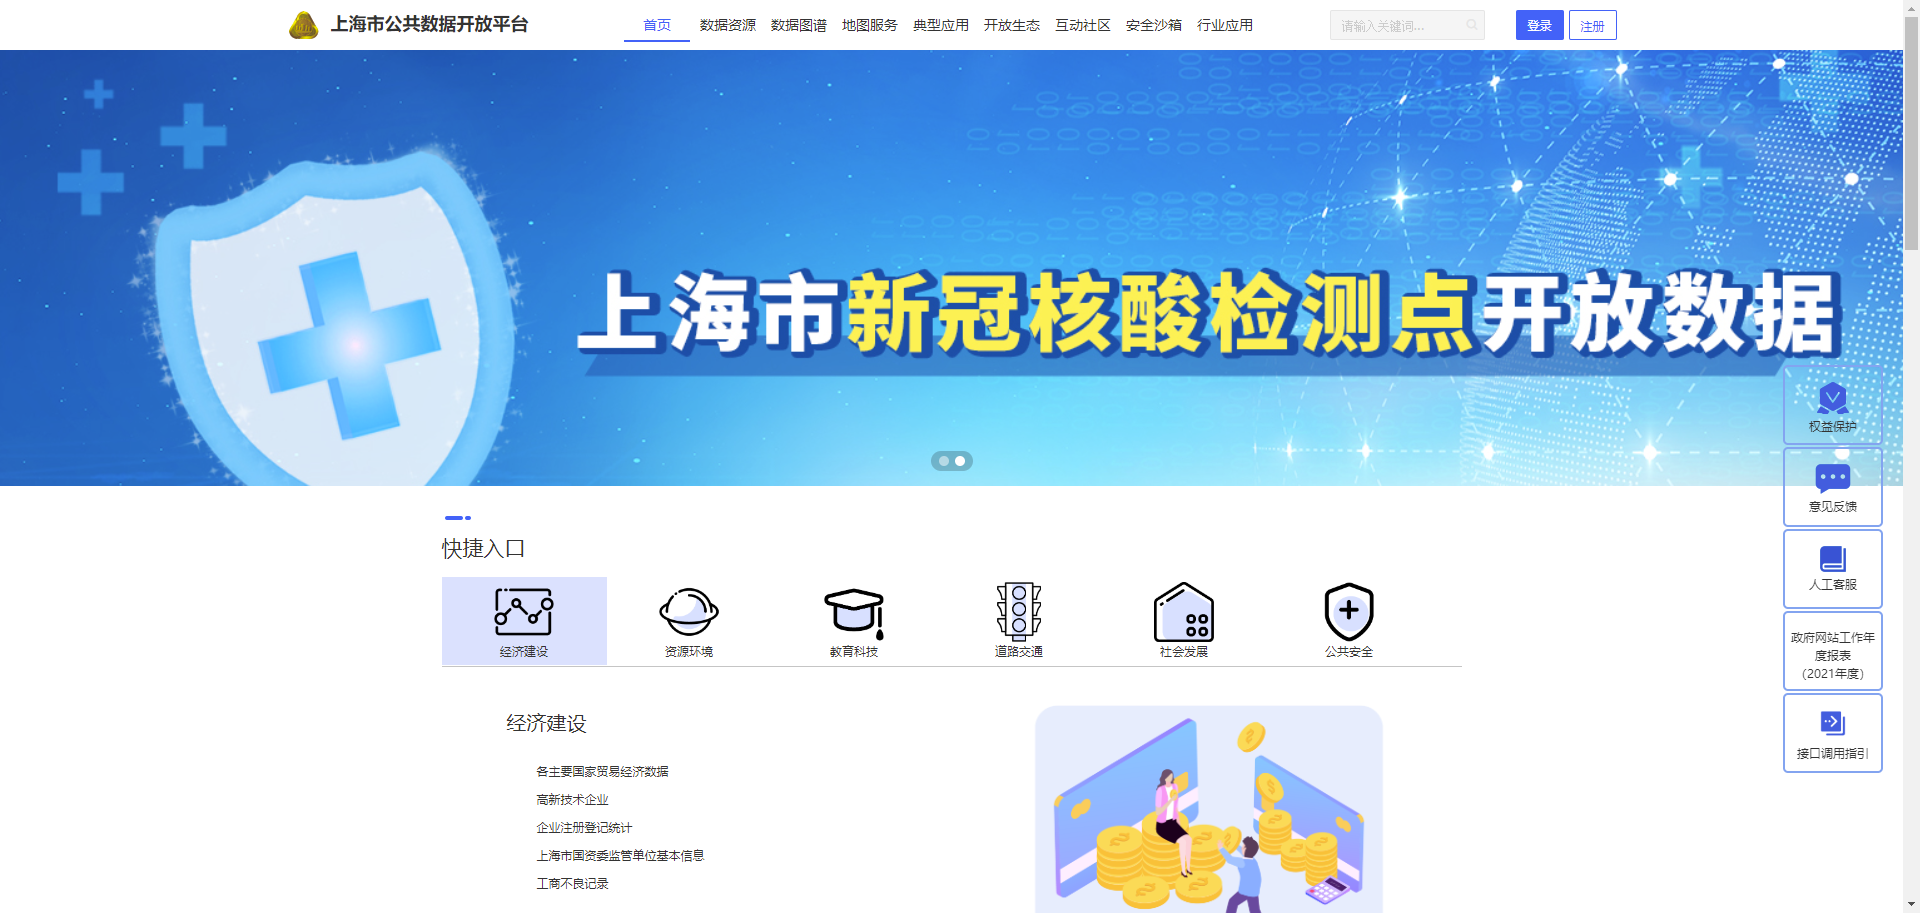 上海市公共数据开放平台